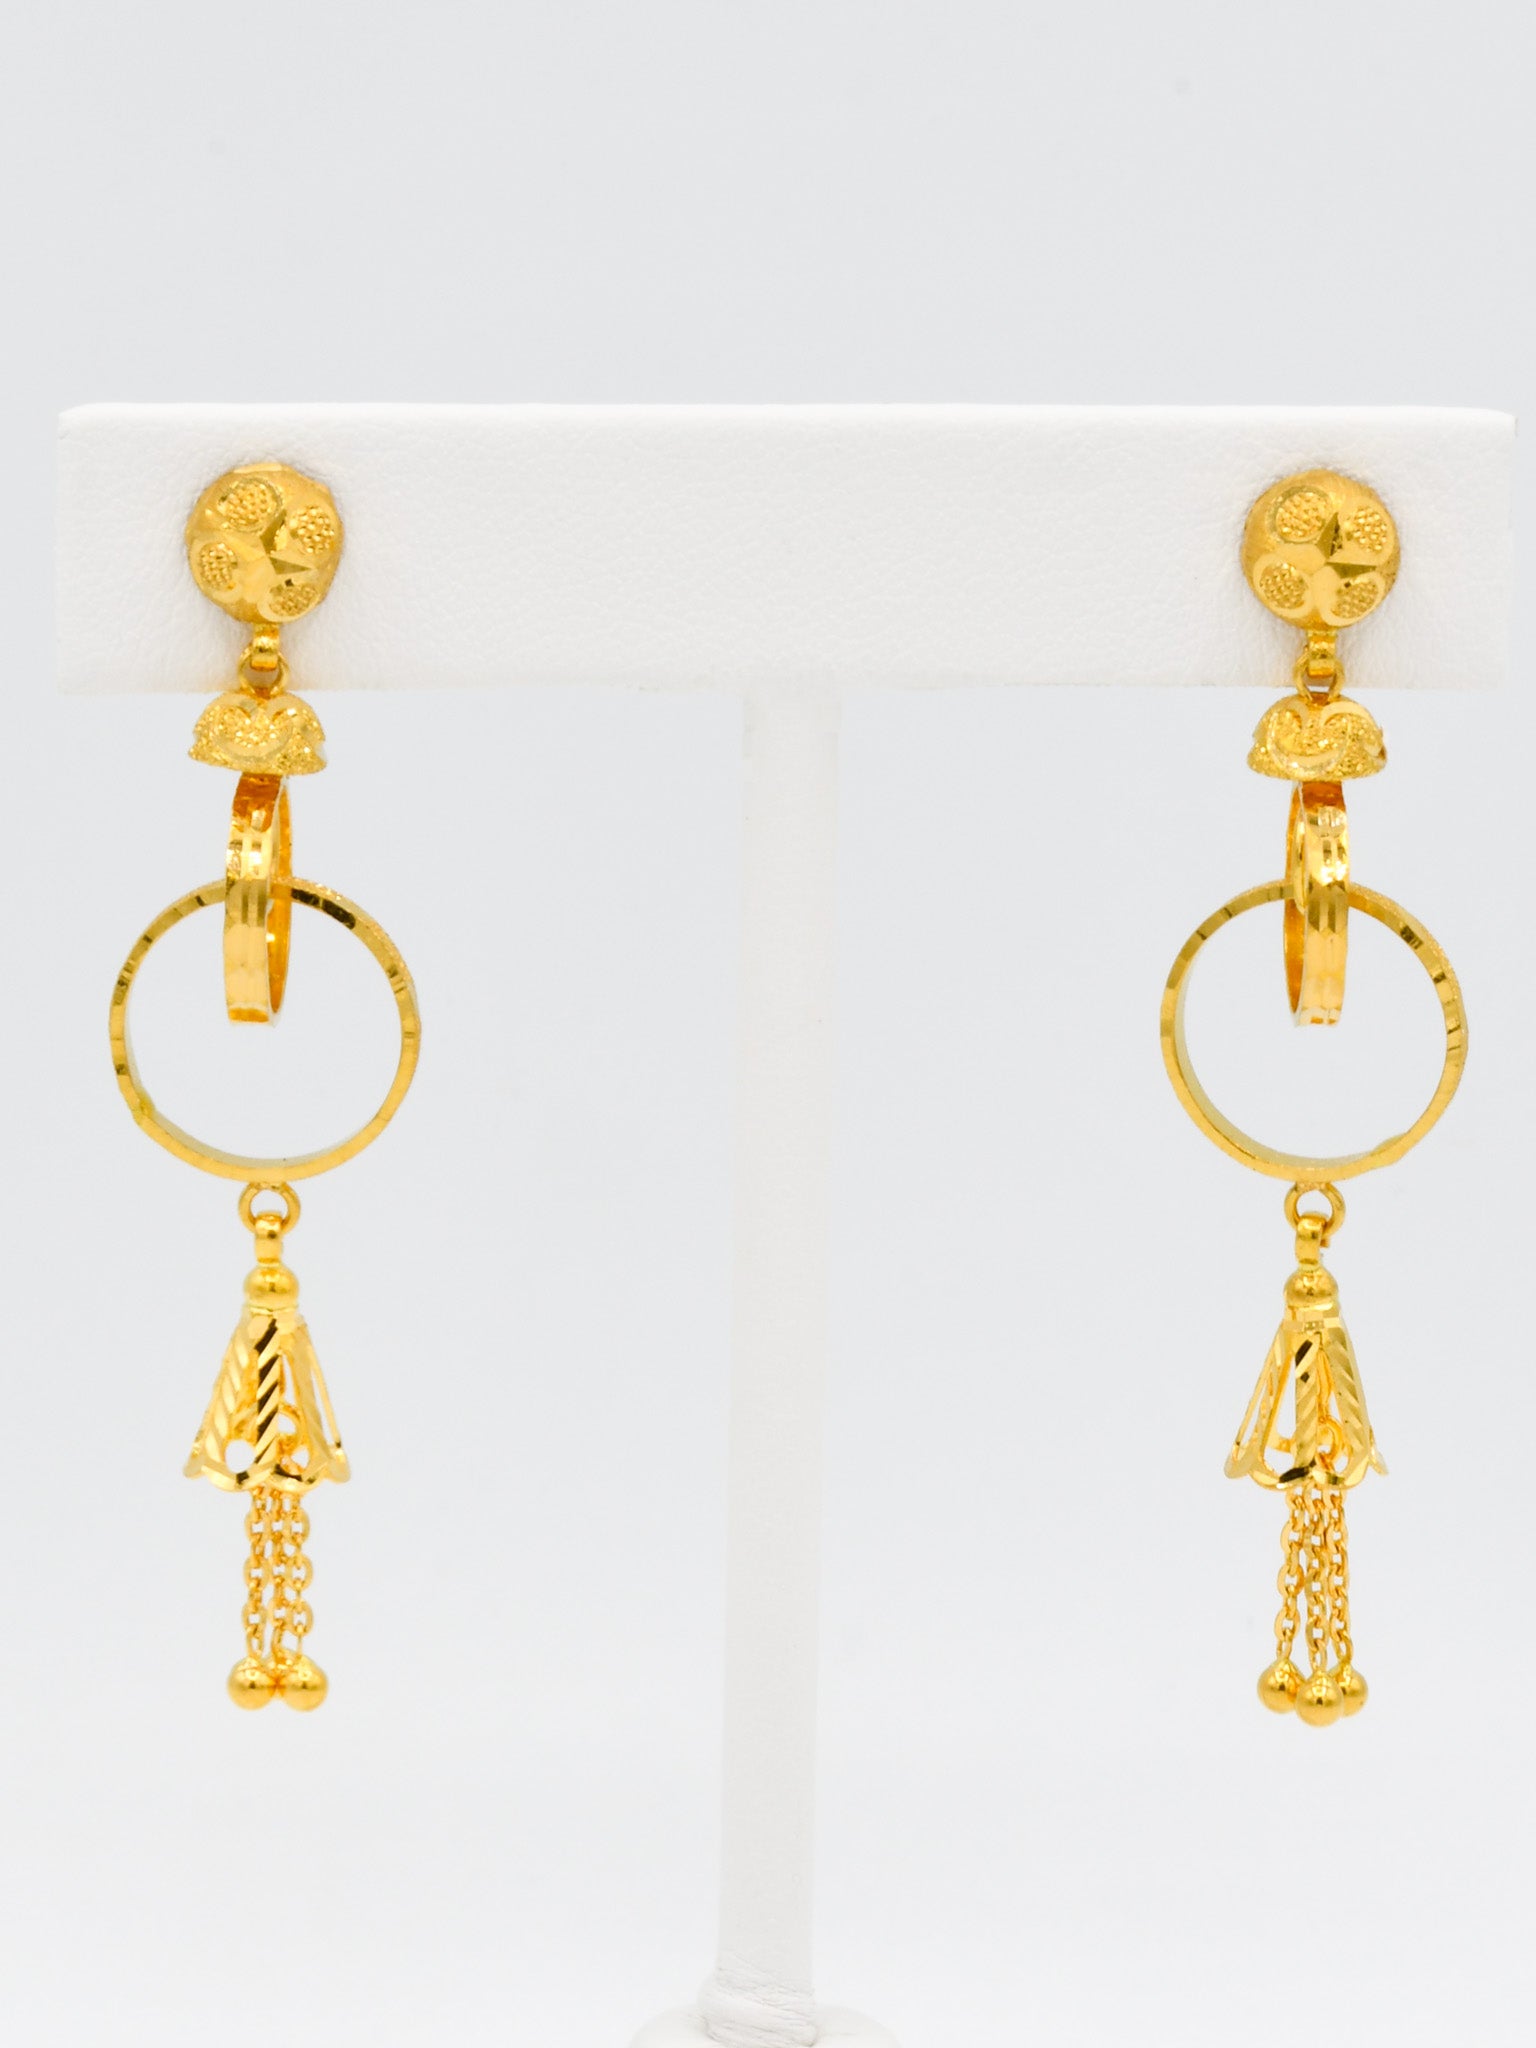 22ct Gold Ball Earrings - Roop Darshan